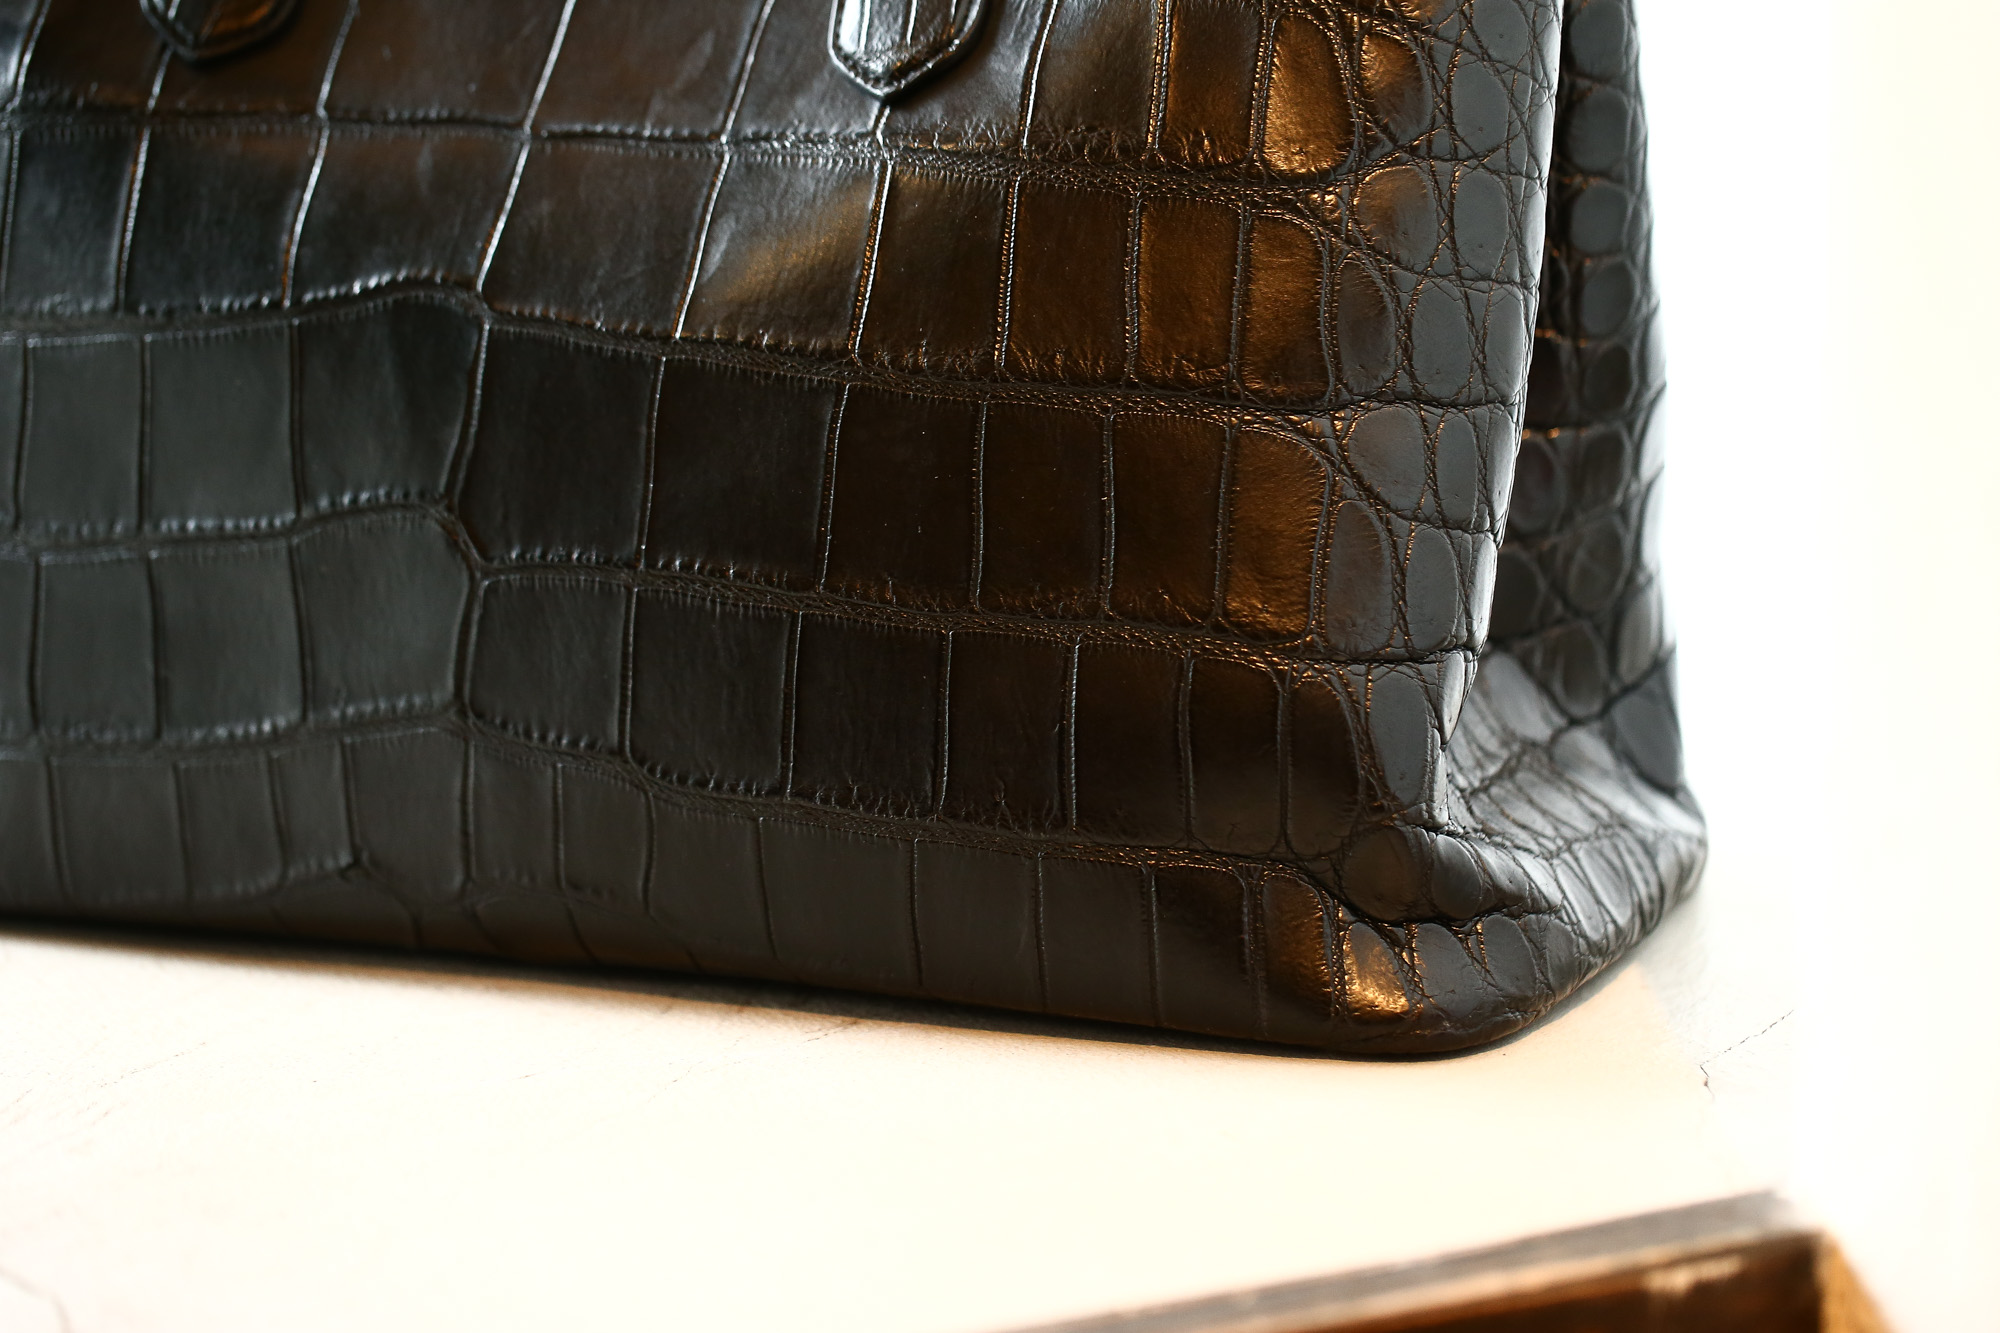 Cisei × 山本製鞄 (シセイ × 山本製鞄) Crocodile Tote Bag Large (クロコダイル トートバッグ ラージ) Large Crocodile Leather (ワニ革) ラージクロコダイル トート バッグ BLACK(ブラック),NAVY(ネイビー),BROWN(ブラウン) Made in Japan (日本製) cisei yamamotoseiho トートバック クロコ 愛知 名古屋 Alto e Diritto アルト エ デリット